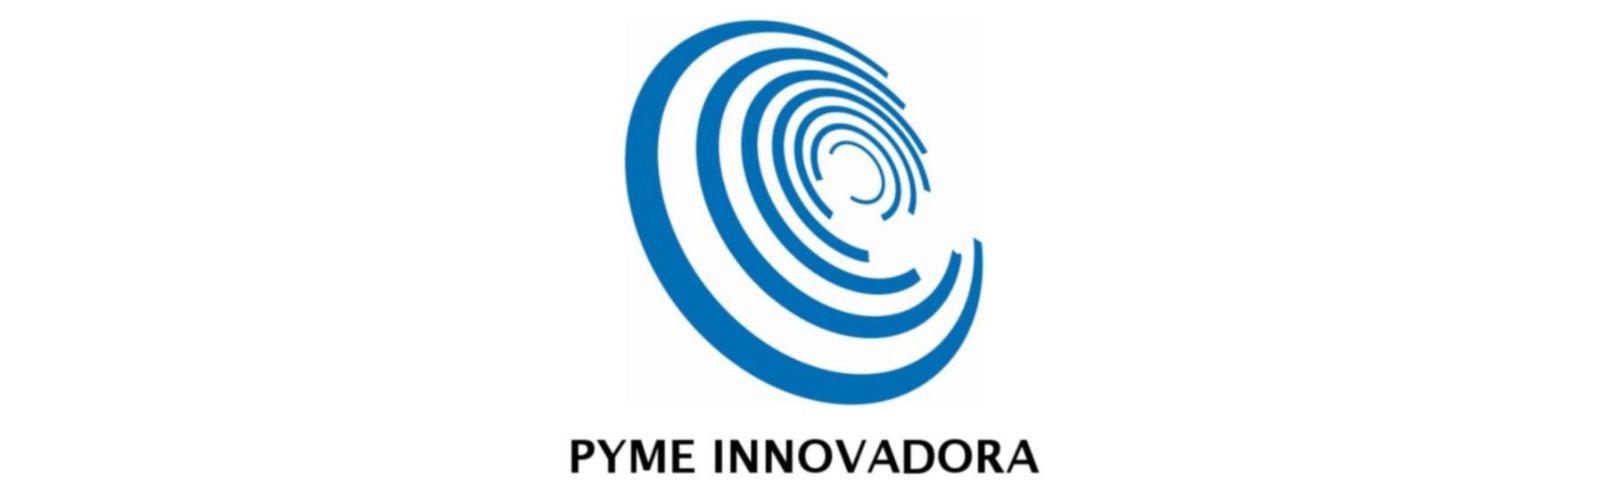 Nota de prensa - La spin-off “EmbryoCloud” logra el sello de Pyme Innovadora